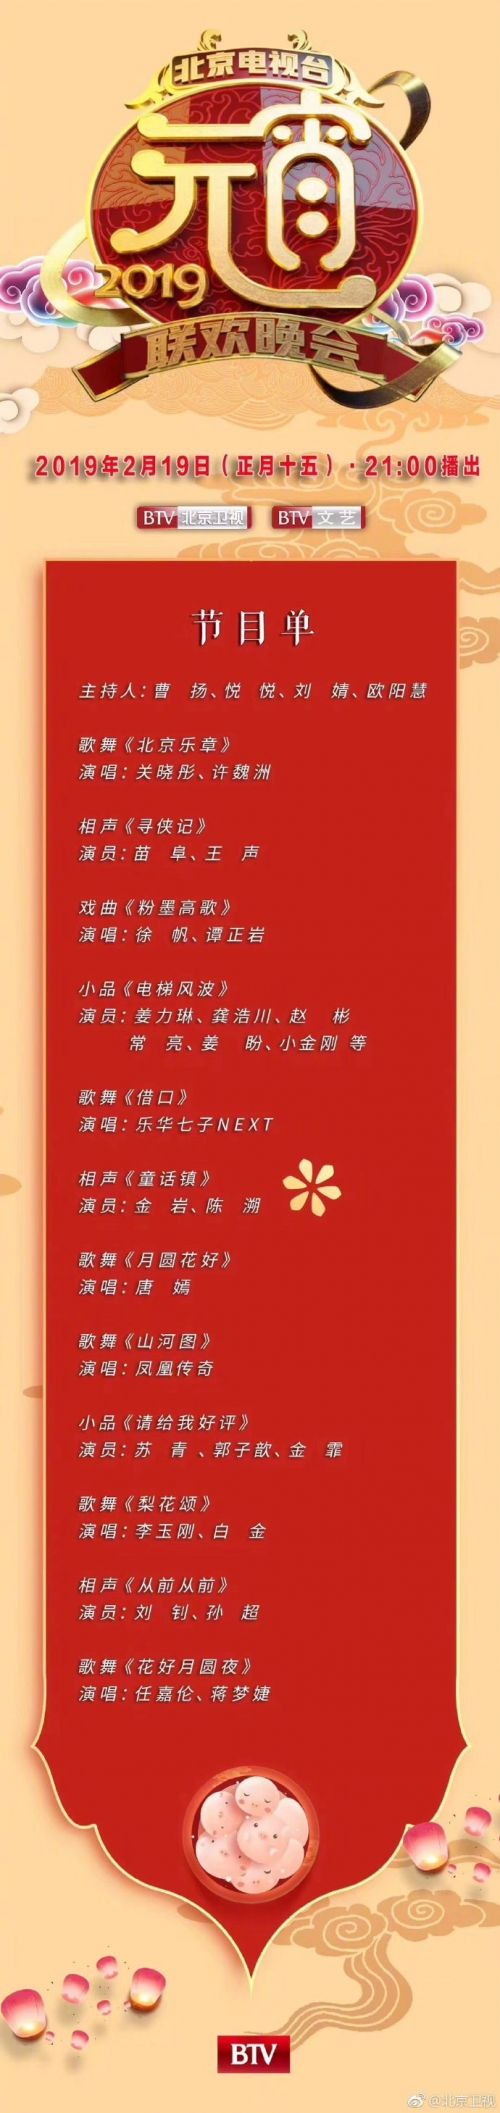 北京卫视2019元宵晚会表演节目单 明星嘉宾名单与直播时间